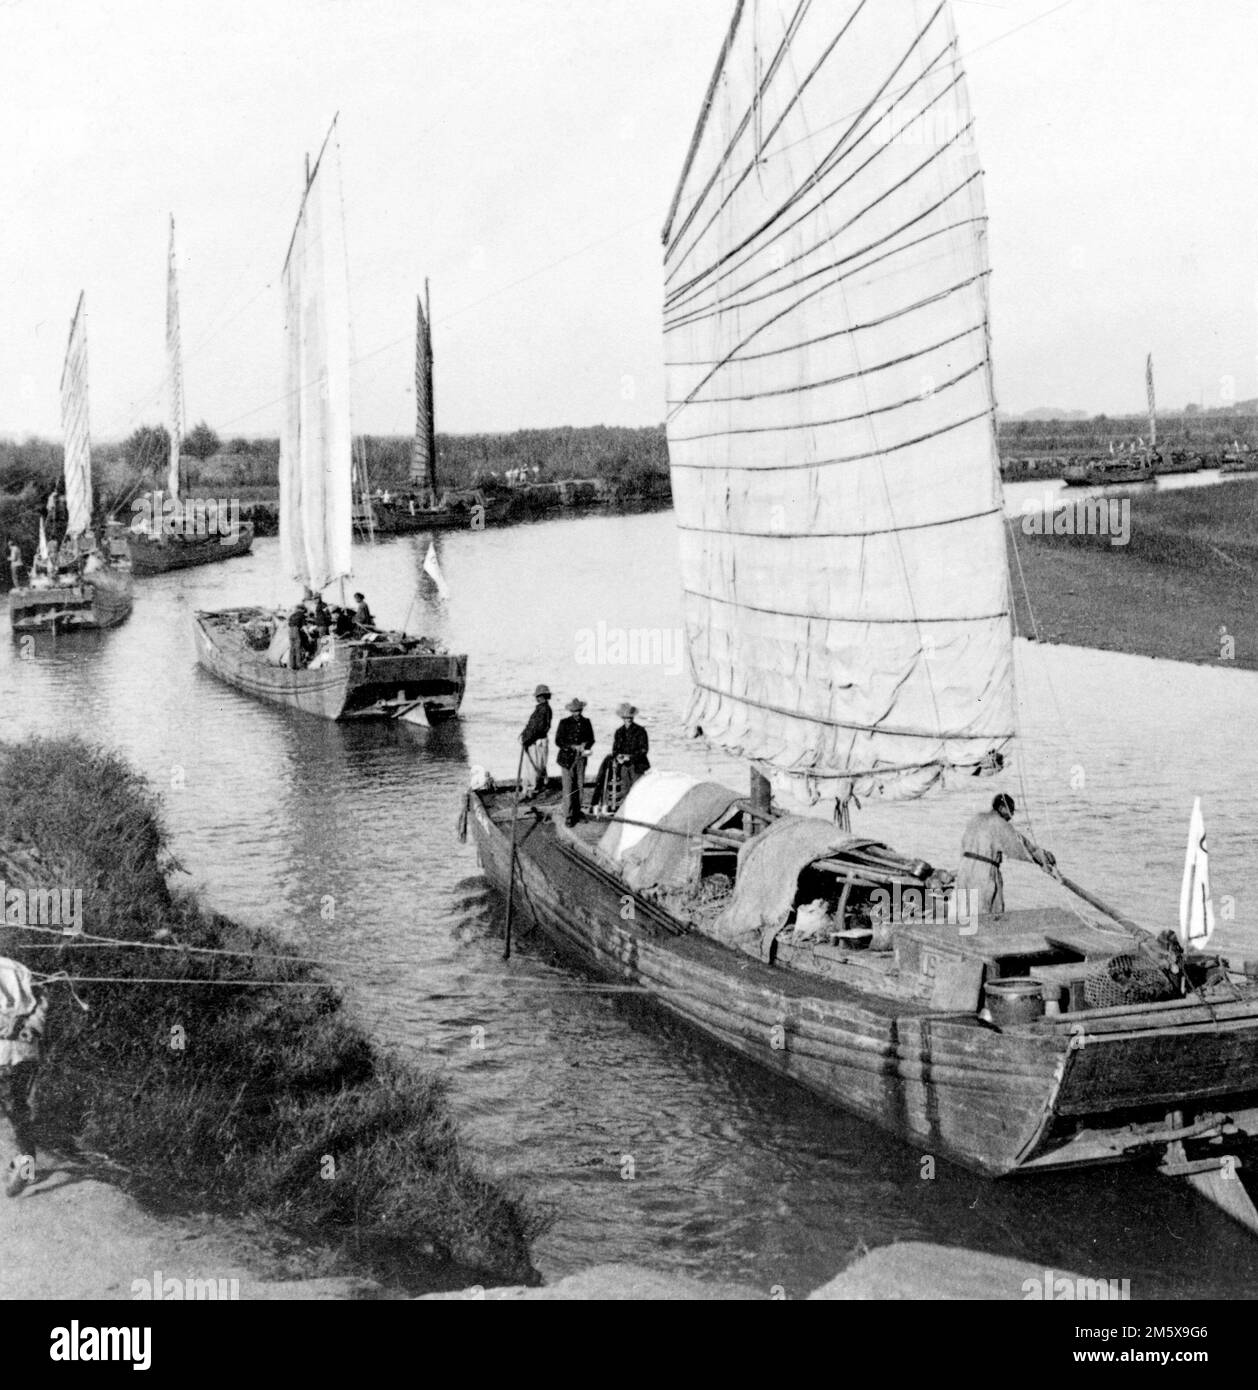 Boxer-Rebellion. Junkflotten auf dem Peiho River - Transport der USA Armeelager von Tientsin bis Peking, China. Foto von Underwood und Underwood, 1900 Stockfoto